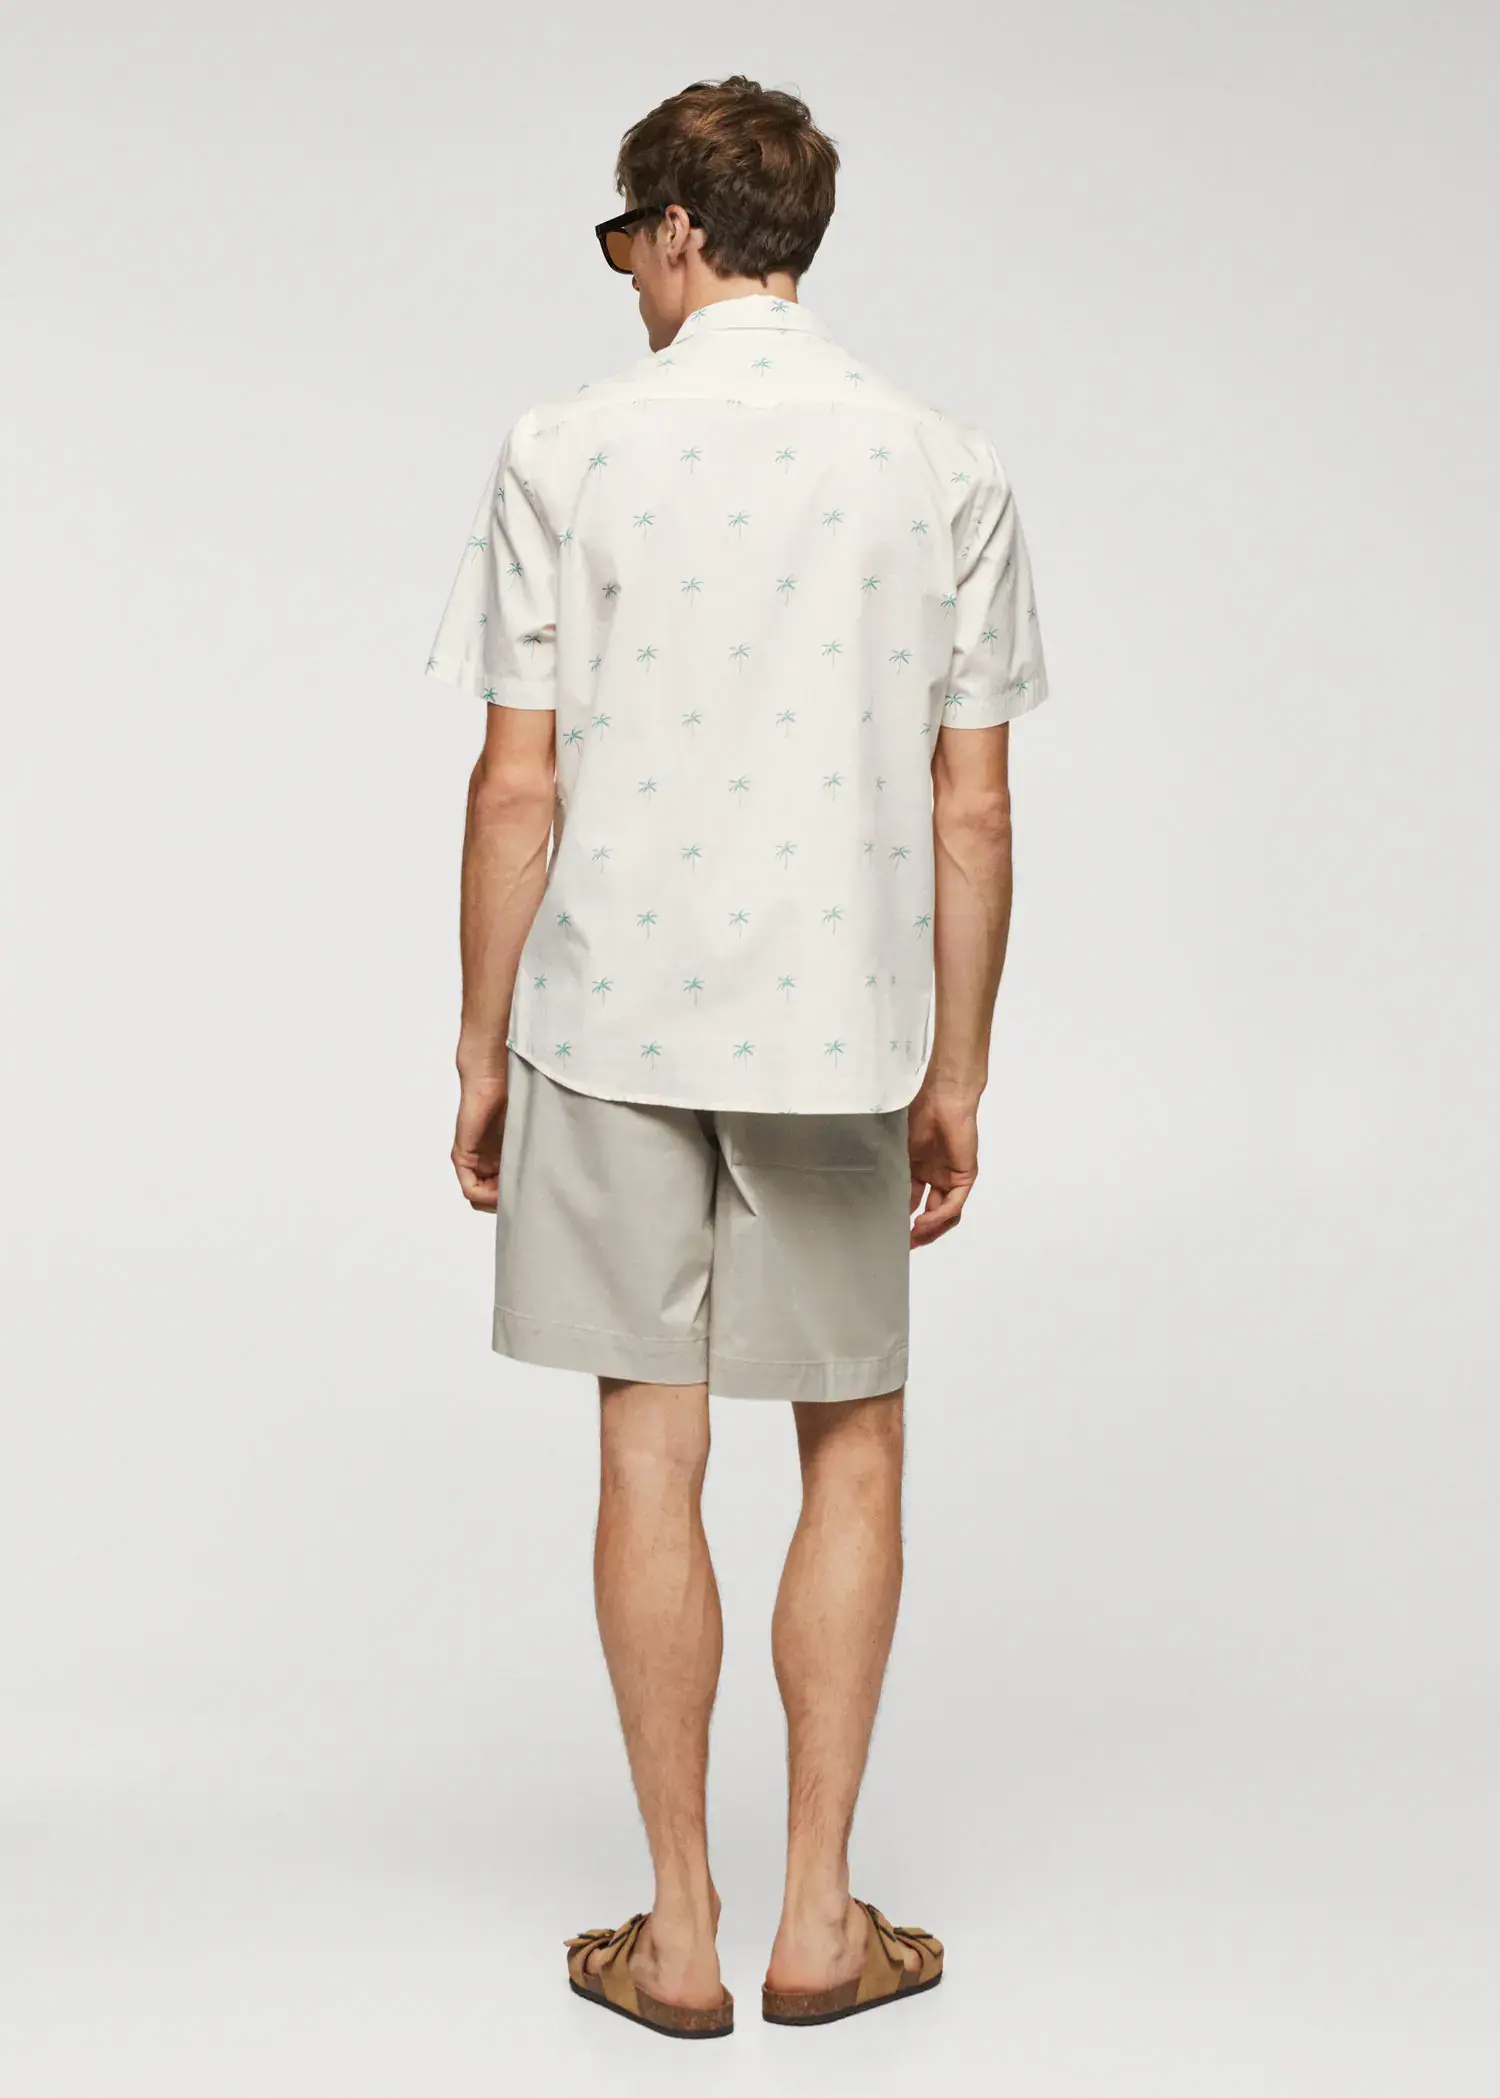 Mango Palm print cotton shirt. 3